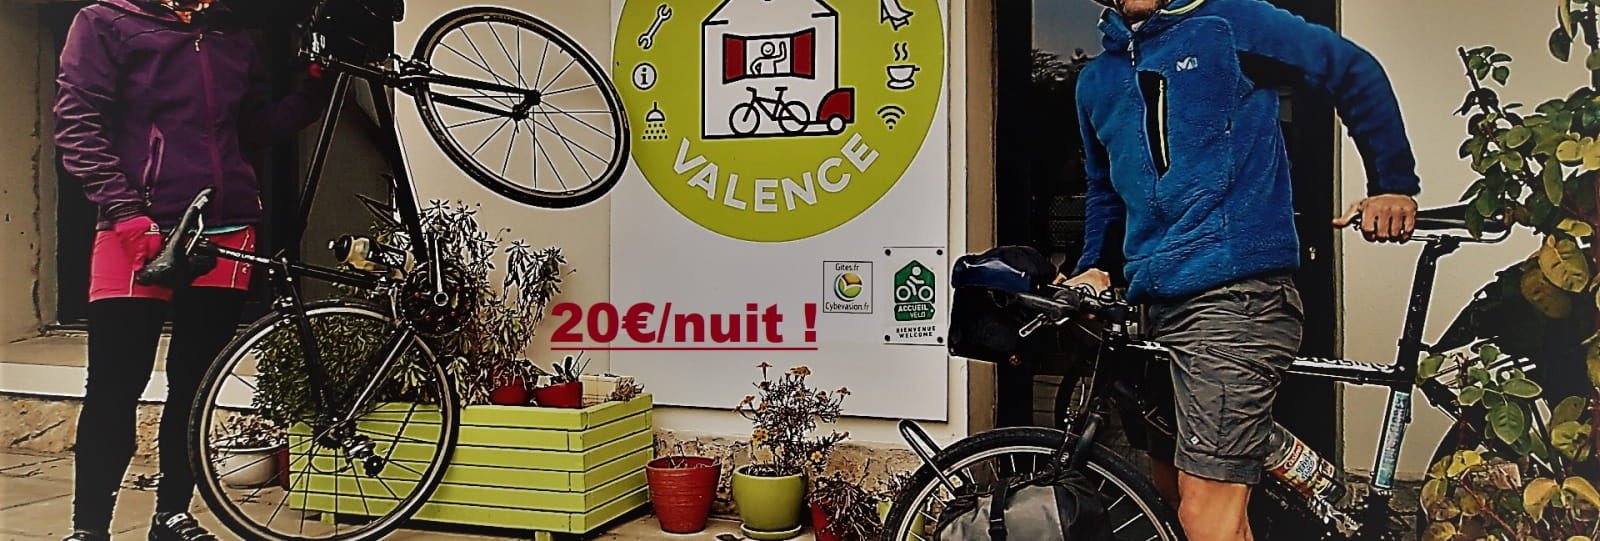 Vélo Gîte Valence